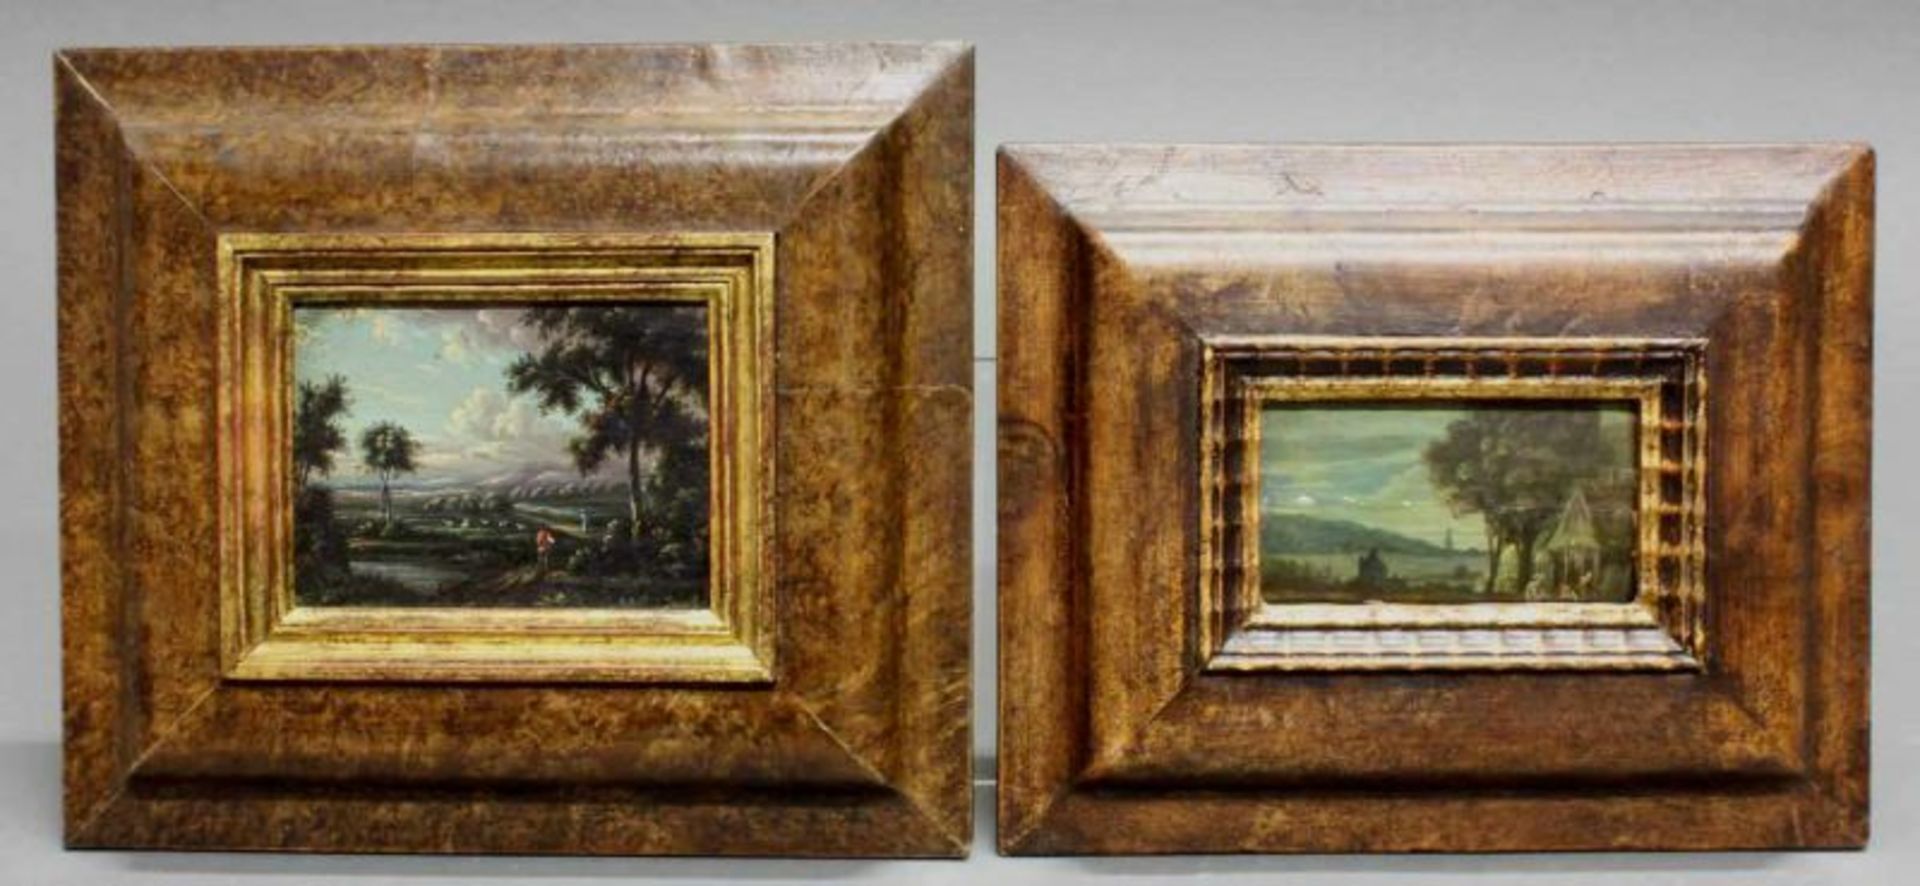 Flämisch bzw. Niederländisch (wohl 17. Jh.), 2 kleine Gemälde, "Landschaften", Öl auf Holz bzw.